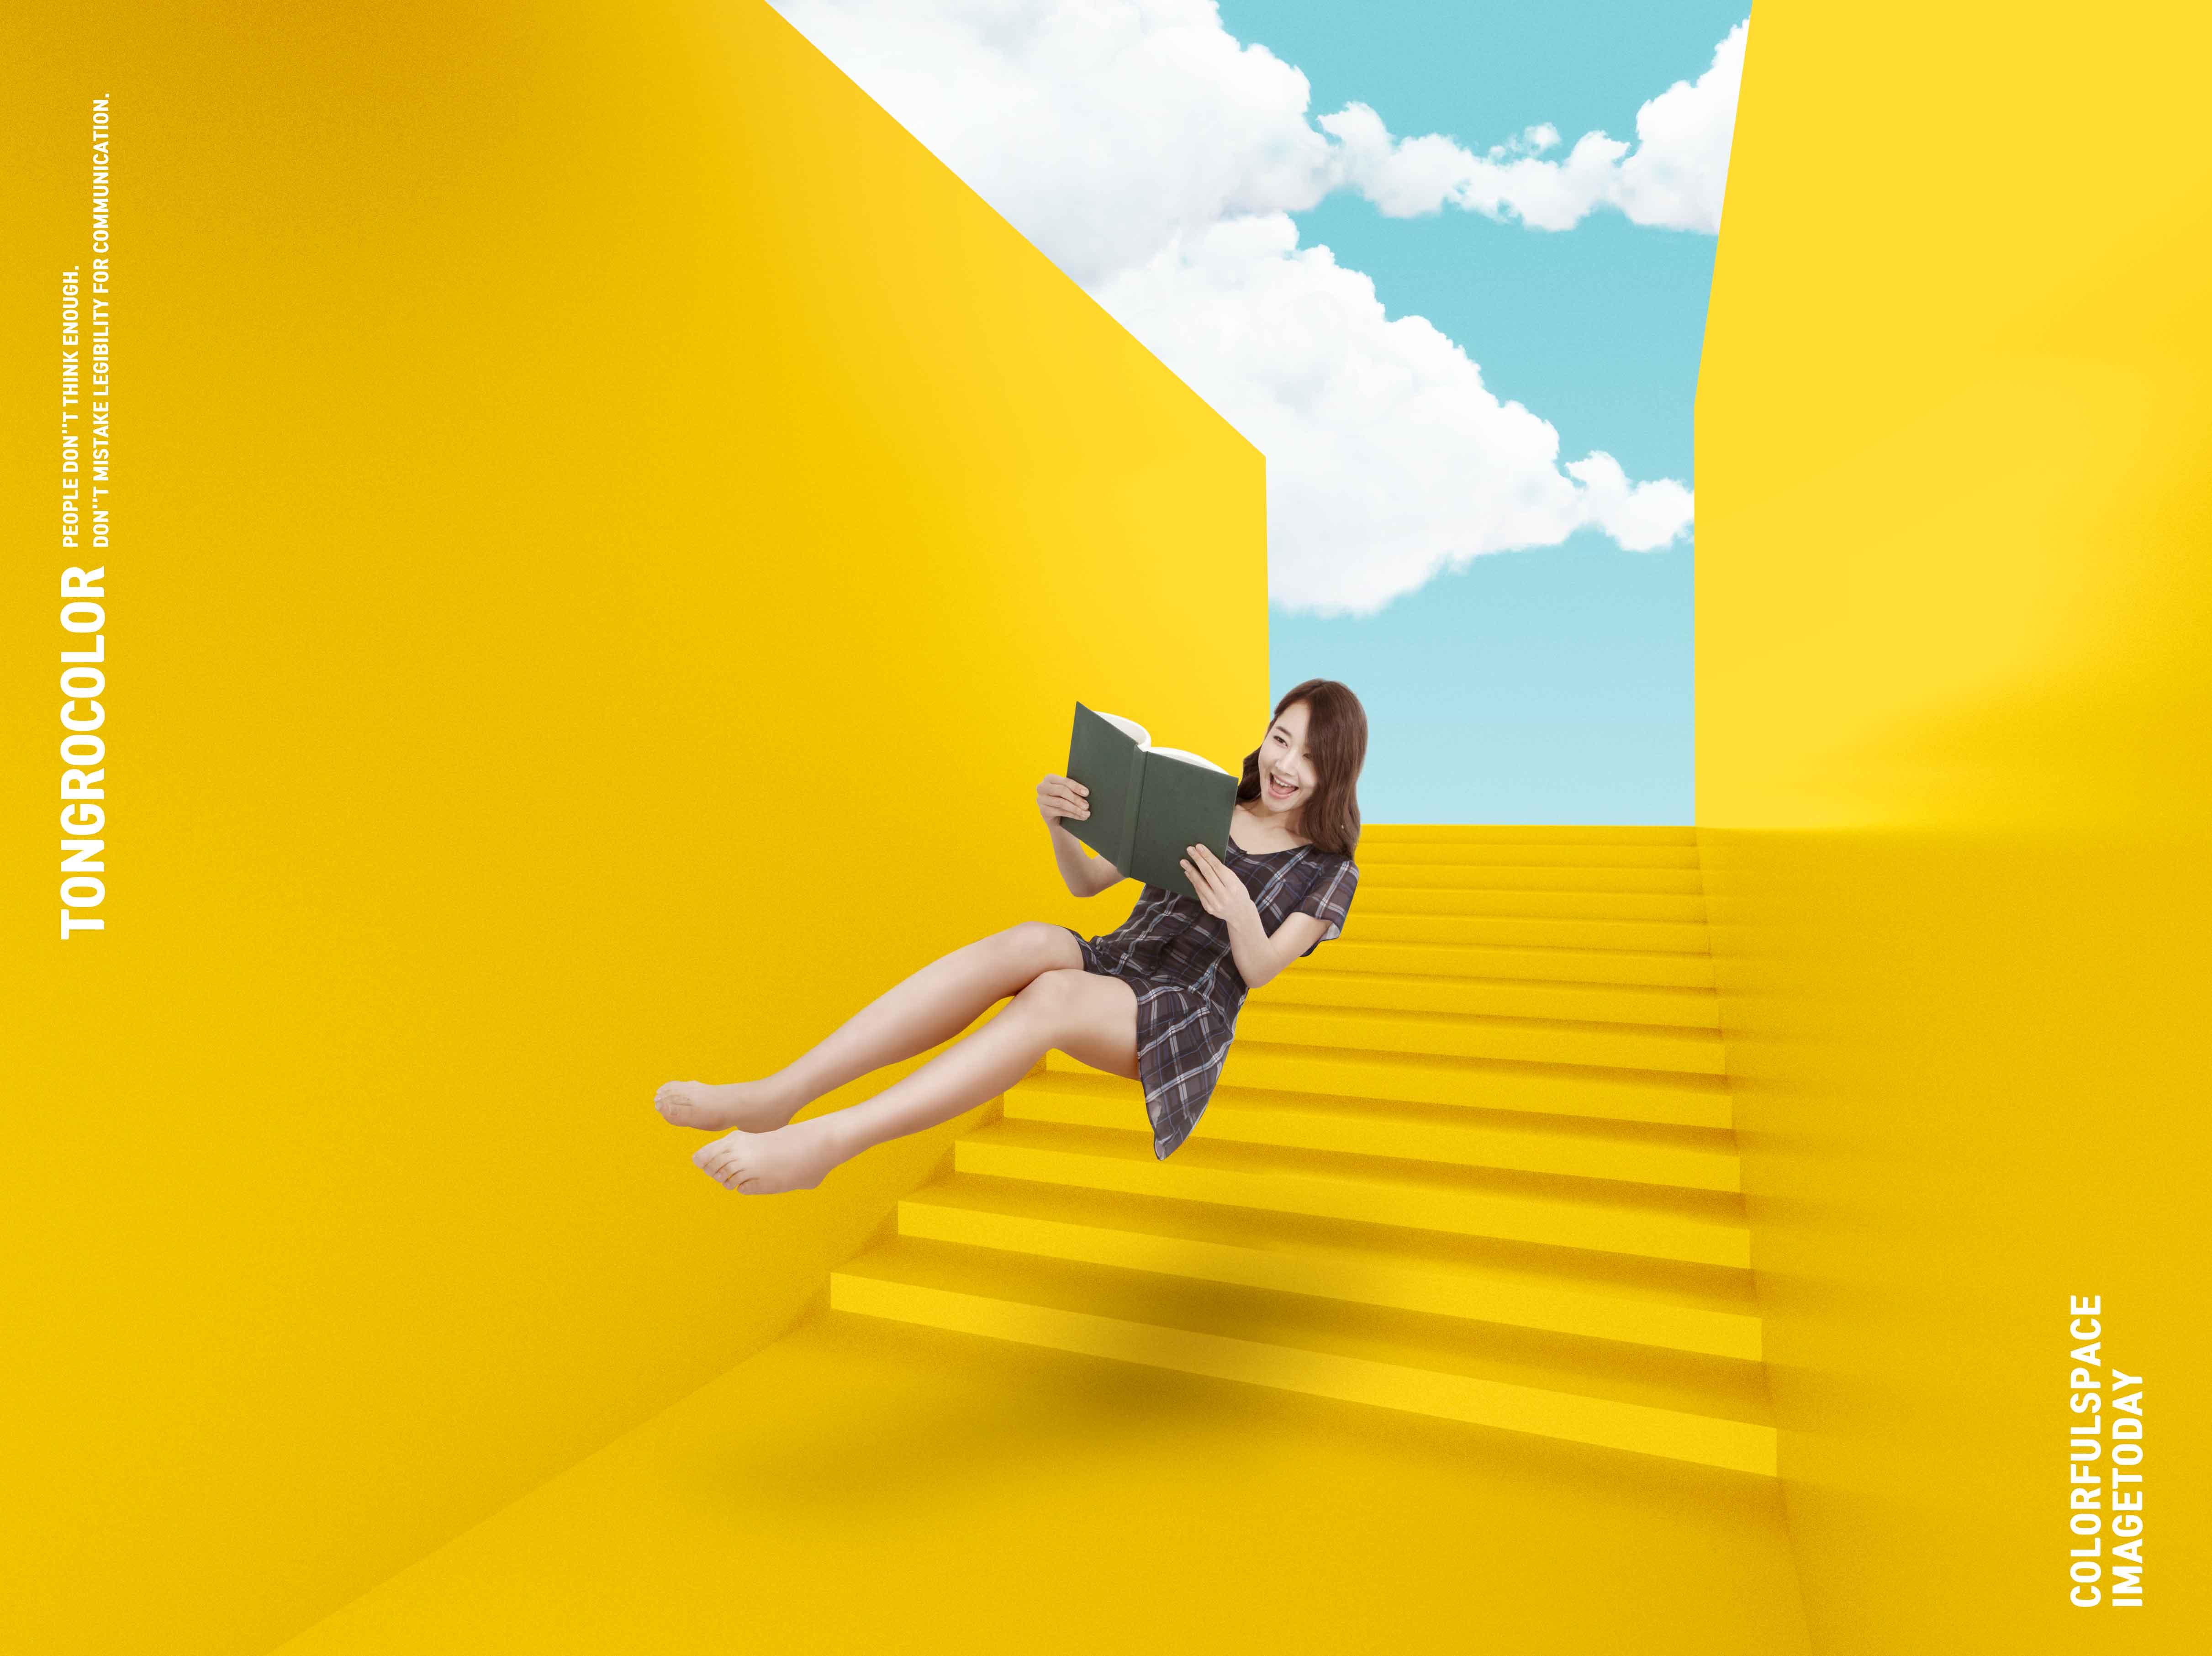 黄色配色抽象楼梯空间海报PSD素材大洋岛精选psd素材插图